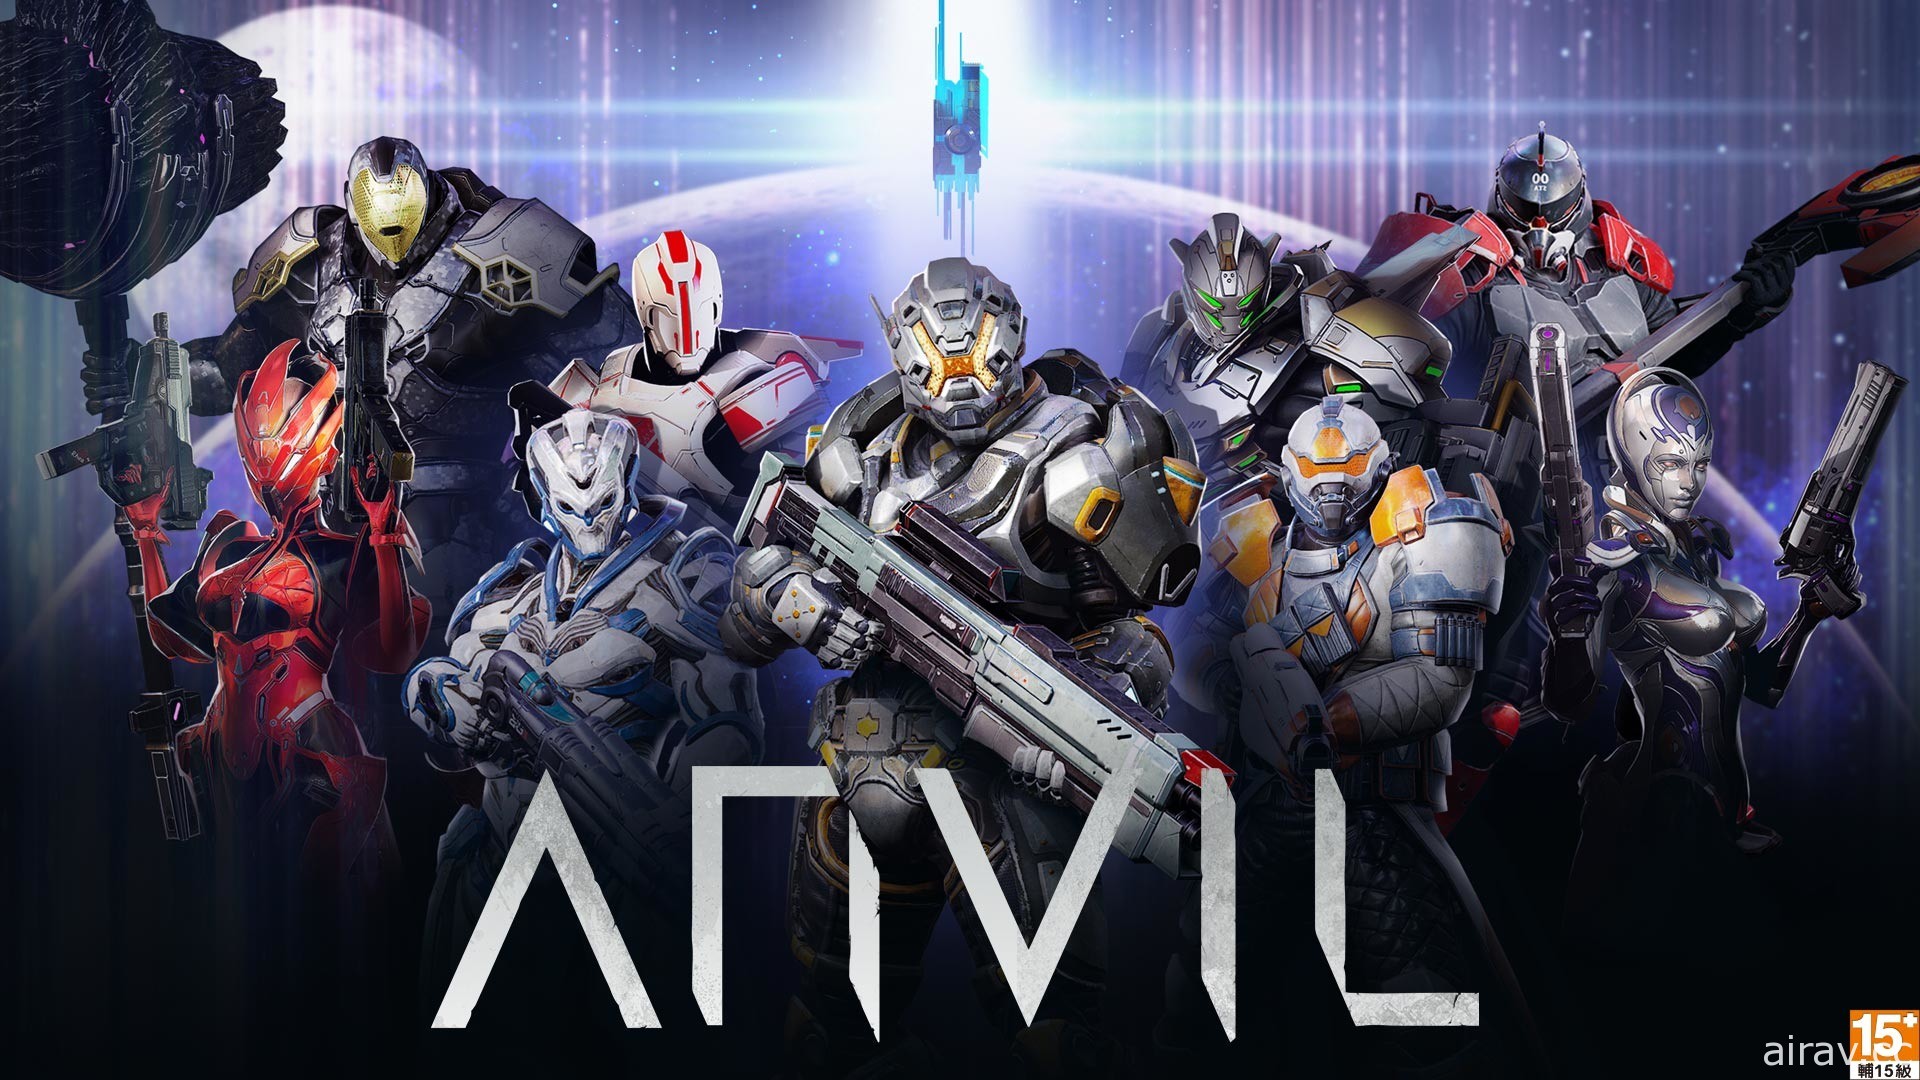 智凡迪宣布獲得 ACTION SQUARE 動作射擊遊戲《ANVIL》授權經銷合作